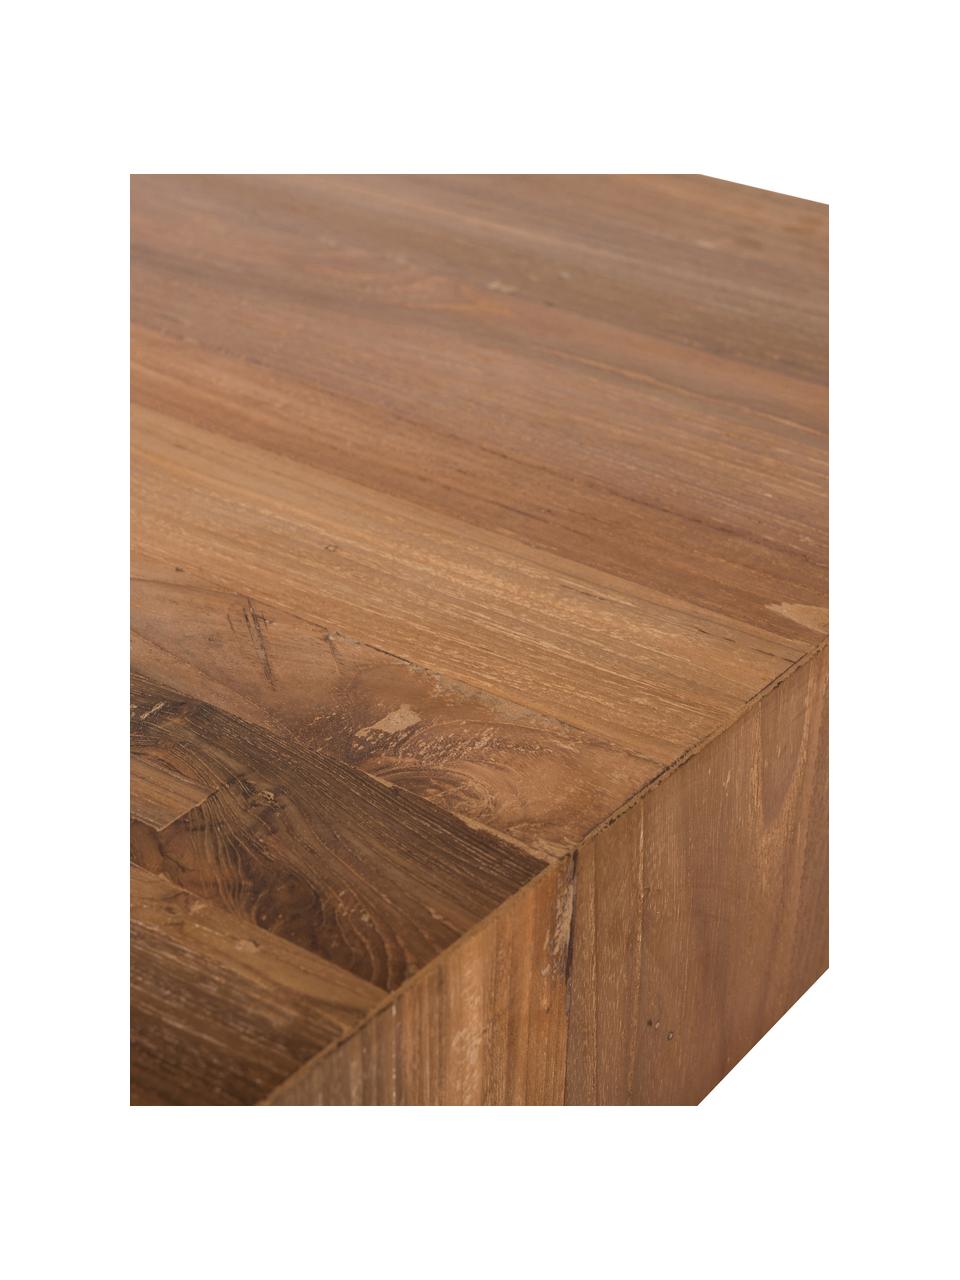 Mesa de centro madera sungkai Plateau, Madera de Sungkai

Dado que esta hecho con materiales naturales, este producto puede diferir de las imágenes. ¡Cada pieza es única!, Madera de Sungkai, An 62 x F 53 cm